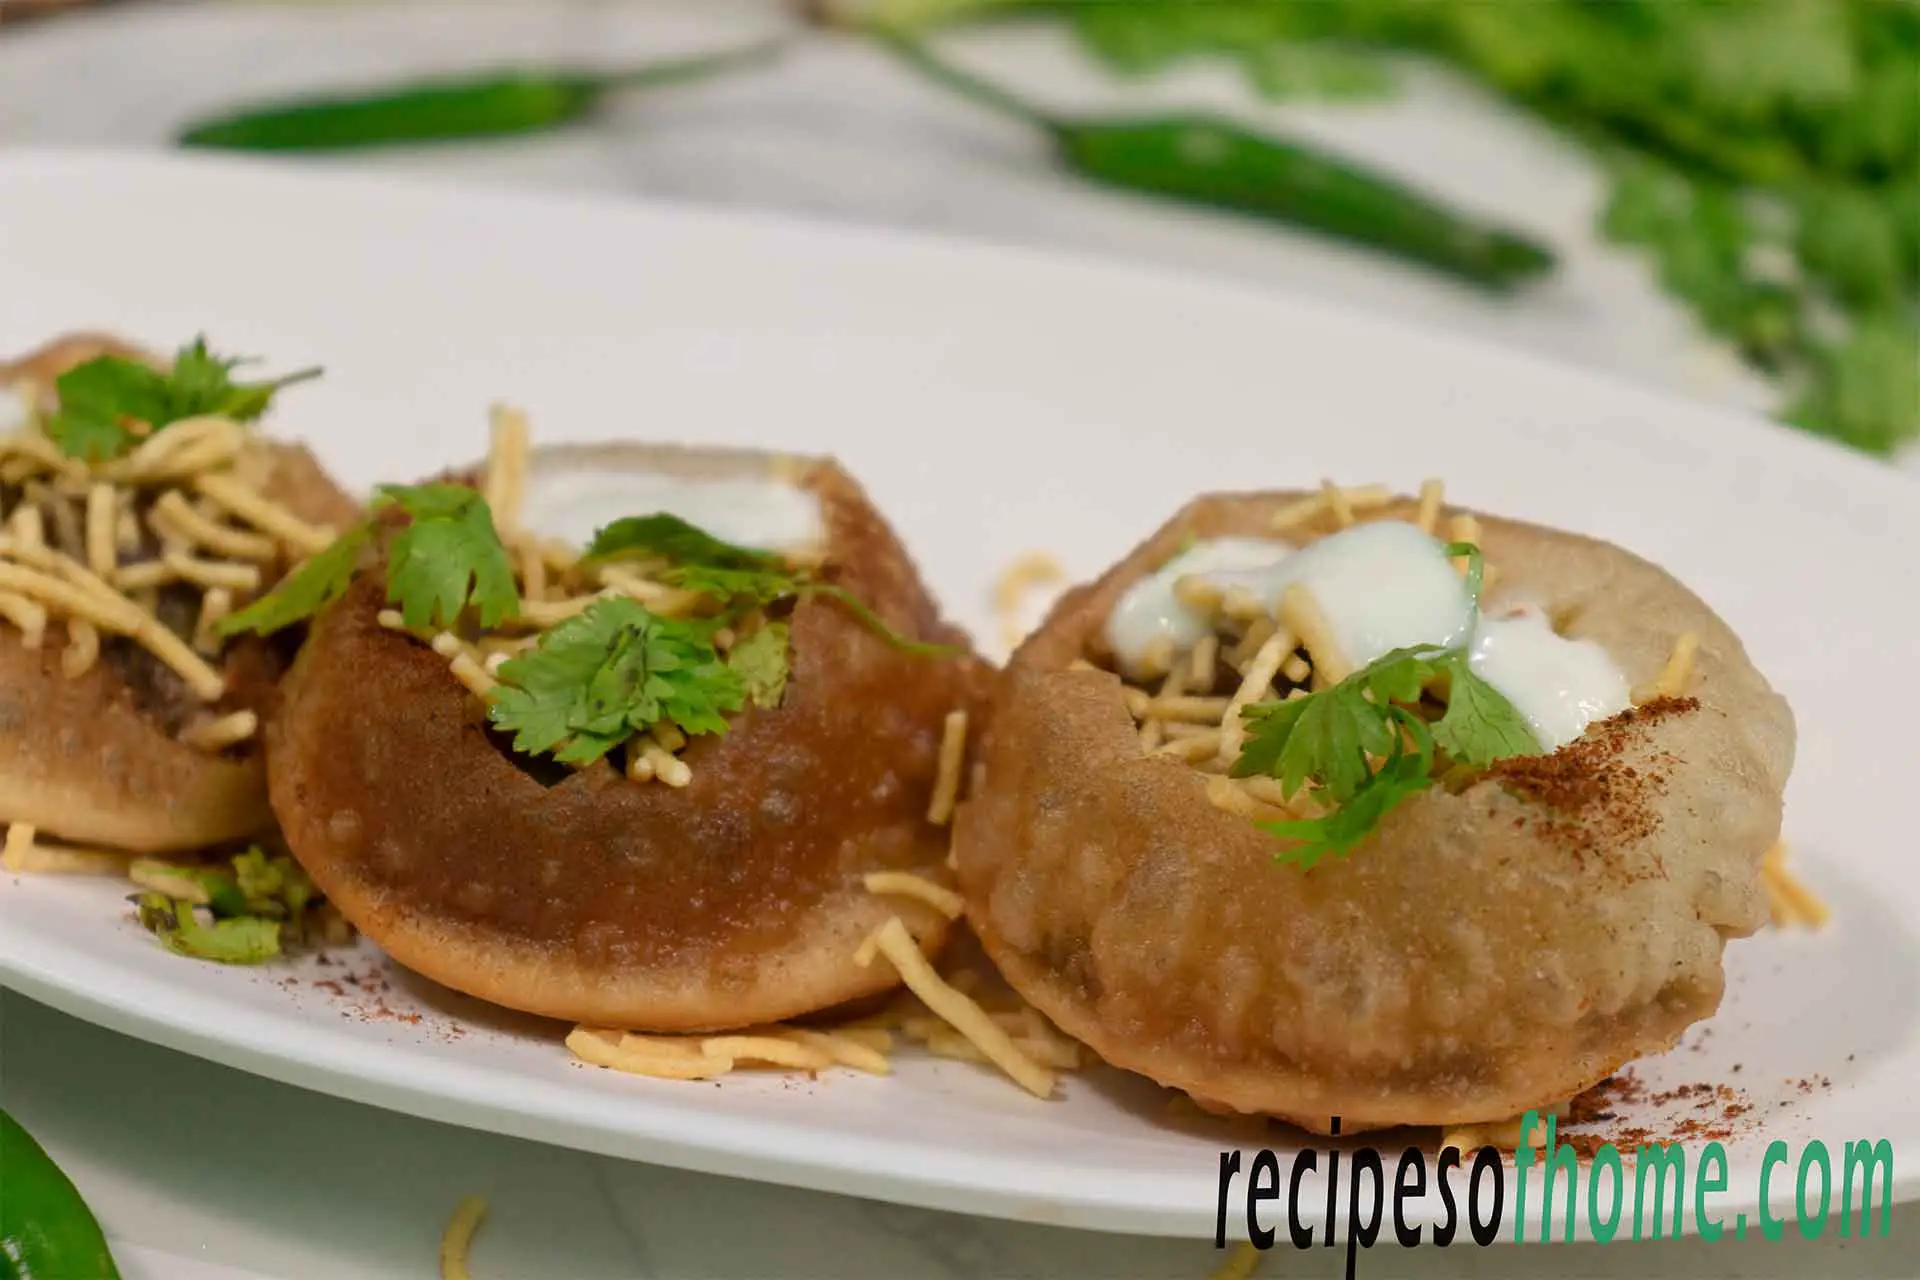 Dahi puri recipe | Dahi batata puri | How to make dahi puri